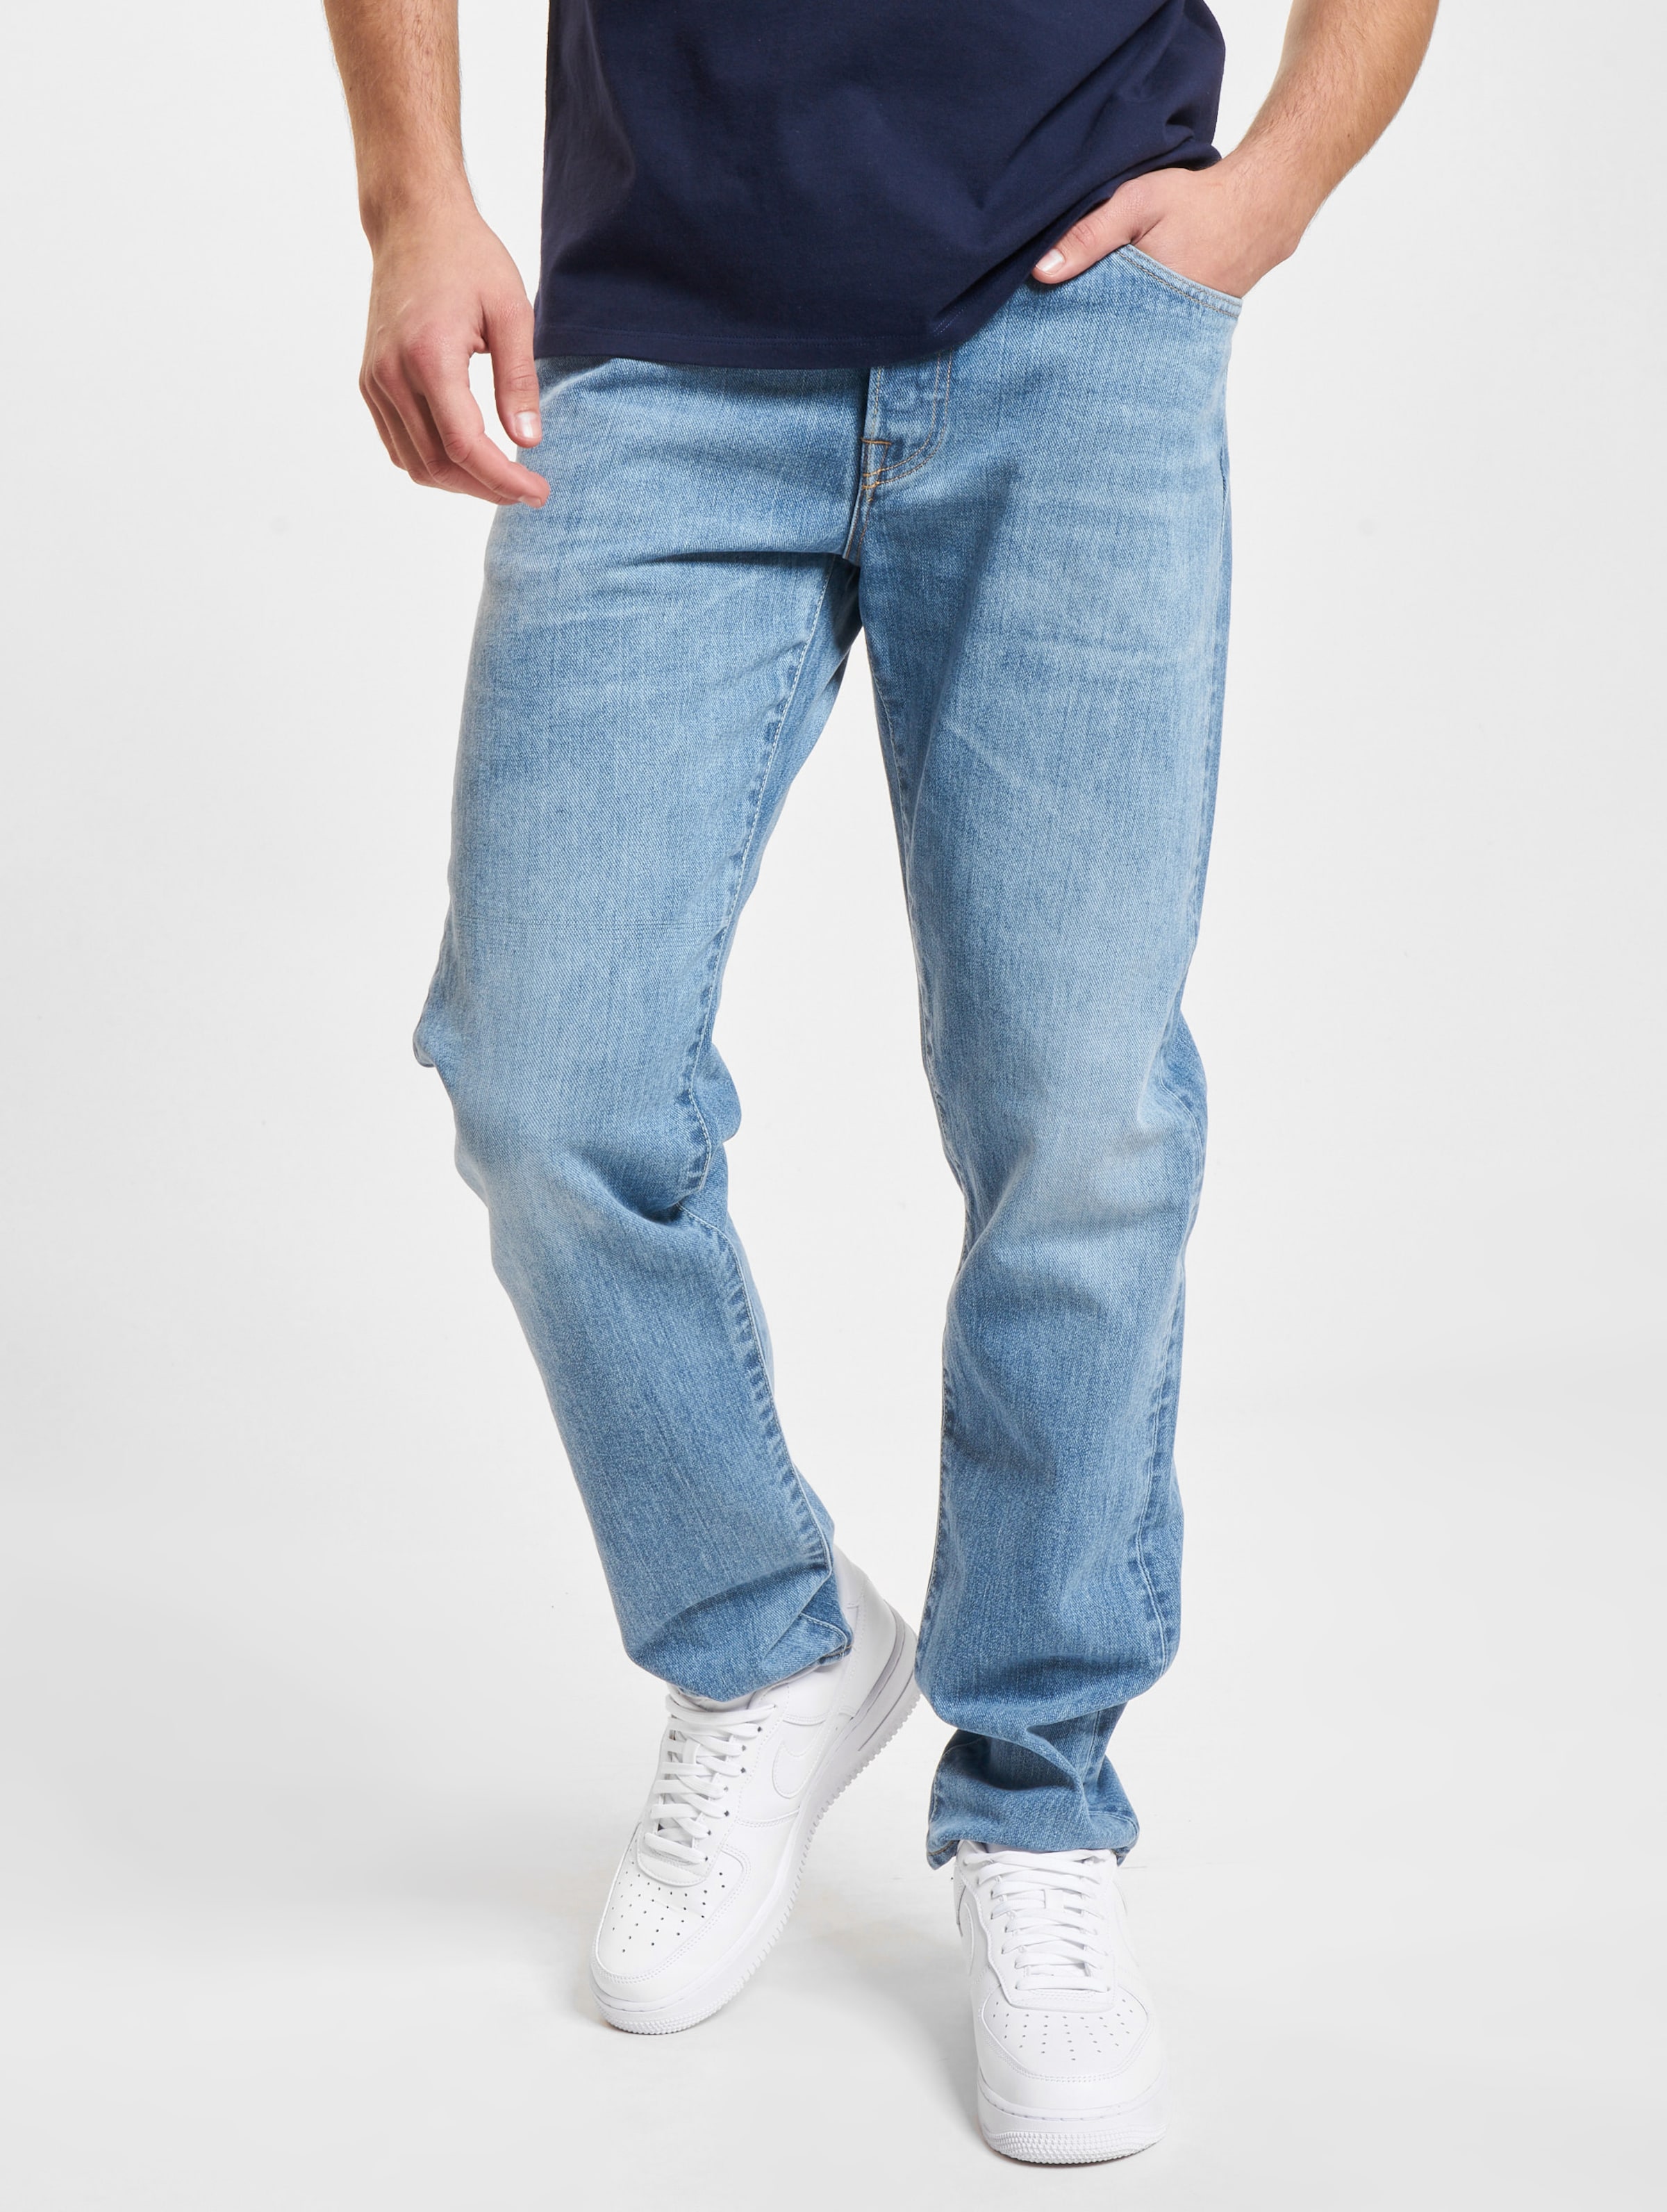 Edwin Regular Jeans Männer,Unisex op kleur blauw, Maat 3332